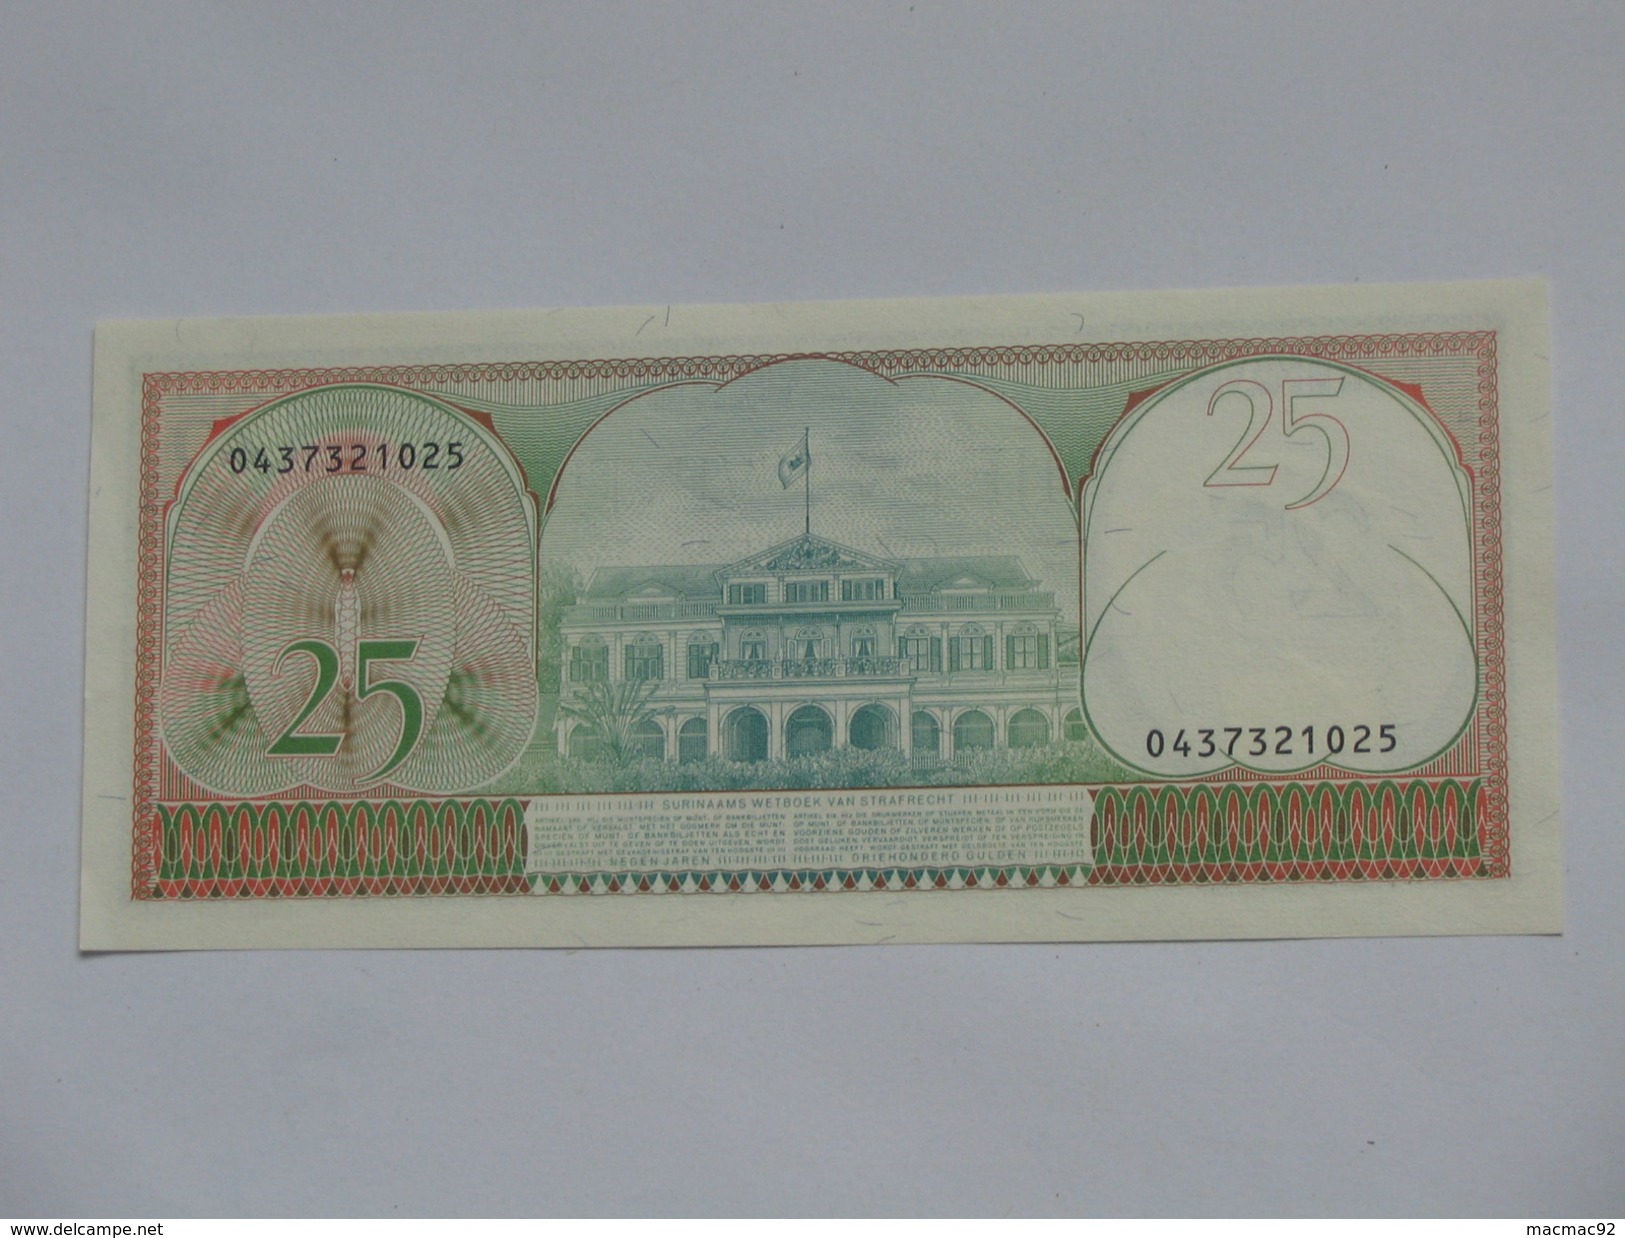 Suriname - 25 Vijf En Twinting Gulden 1985  Central Bank Van SURINAME   **** EN ACHAT IMMEDIAT **** - Surinam